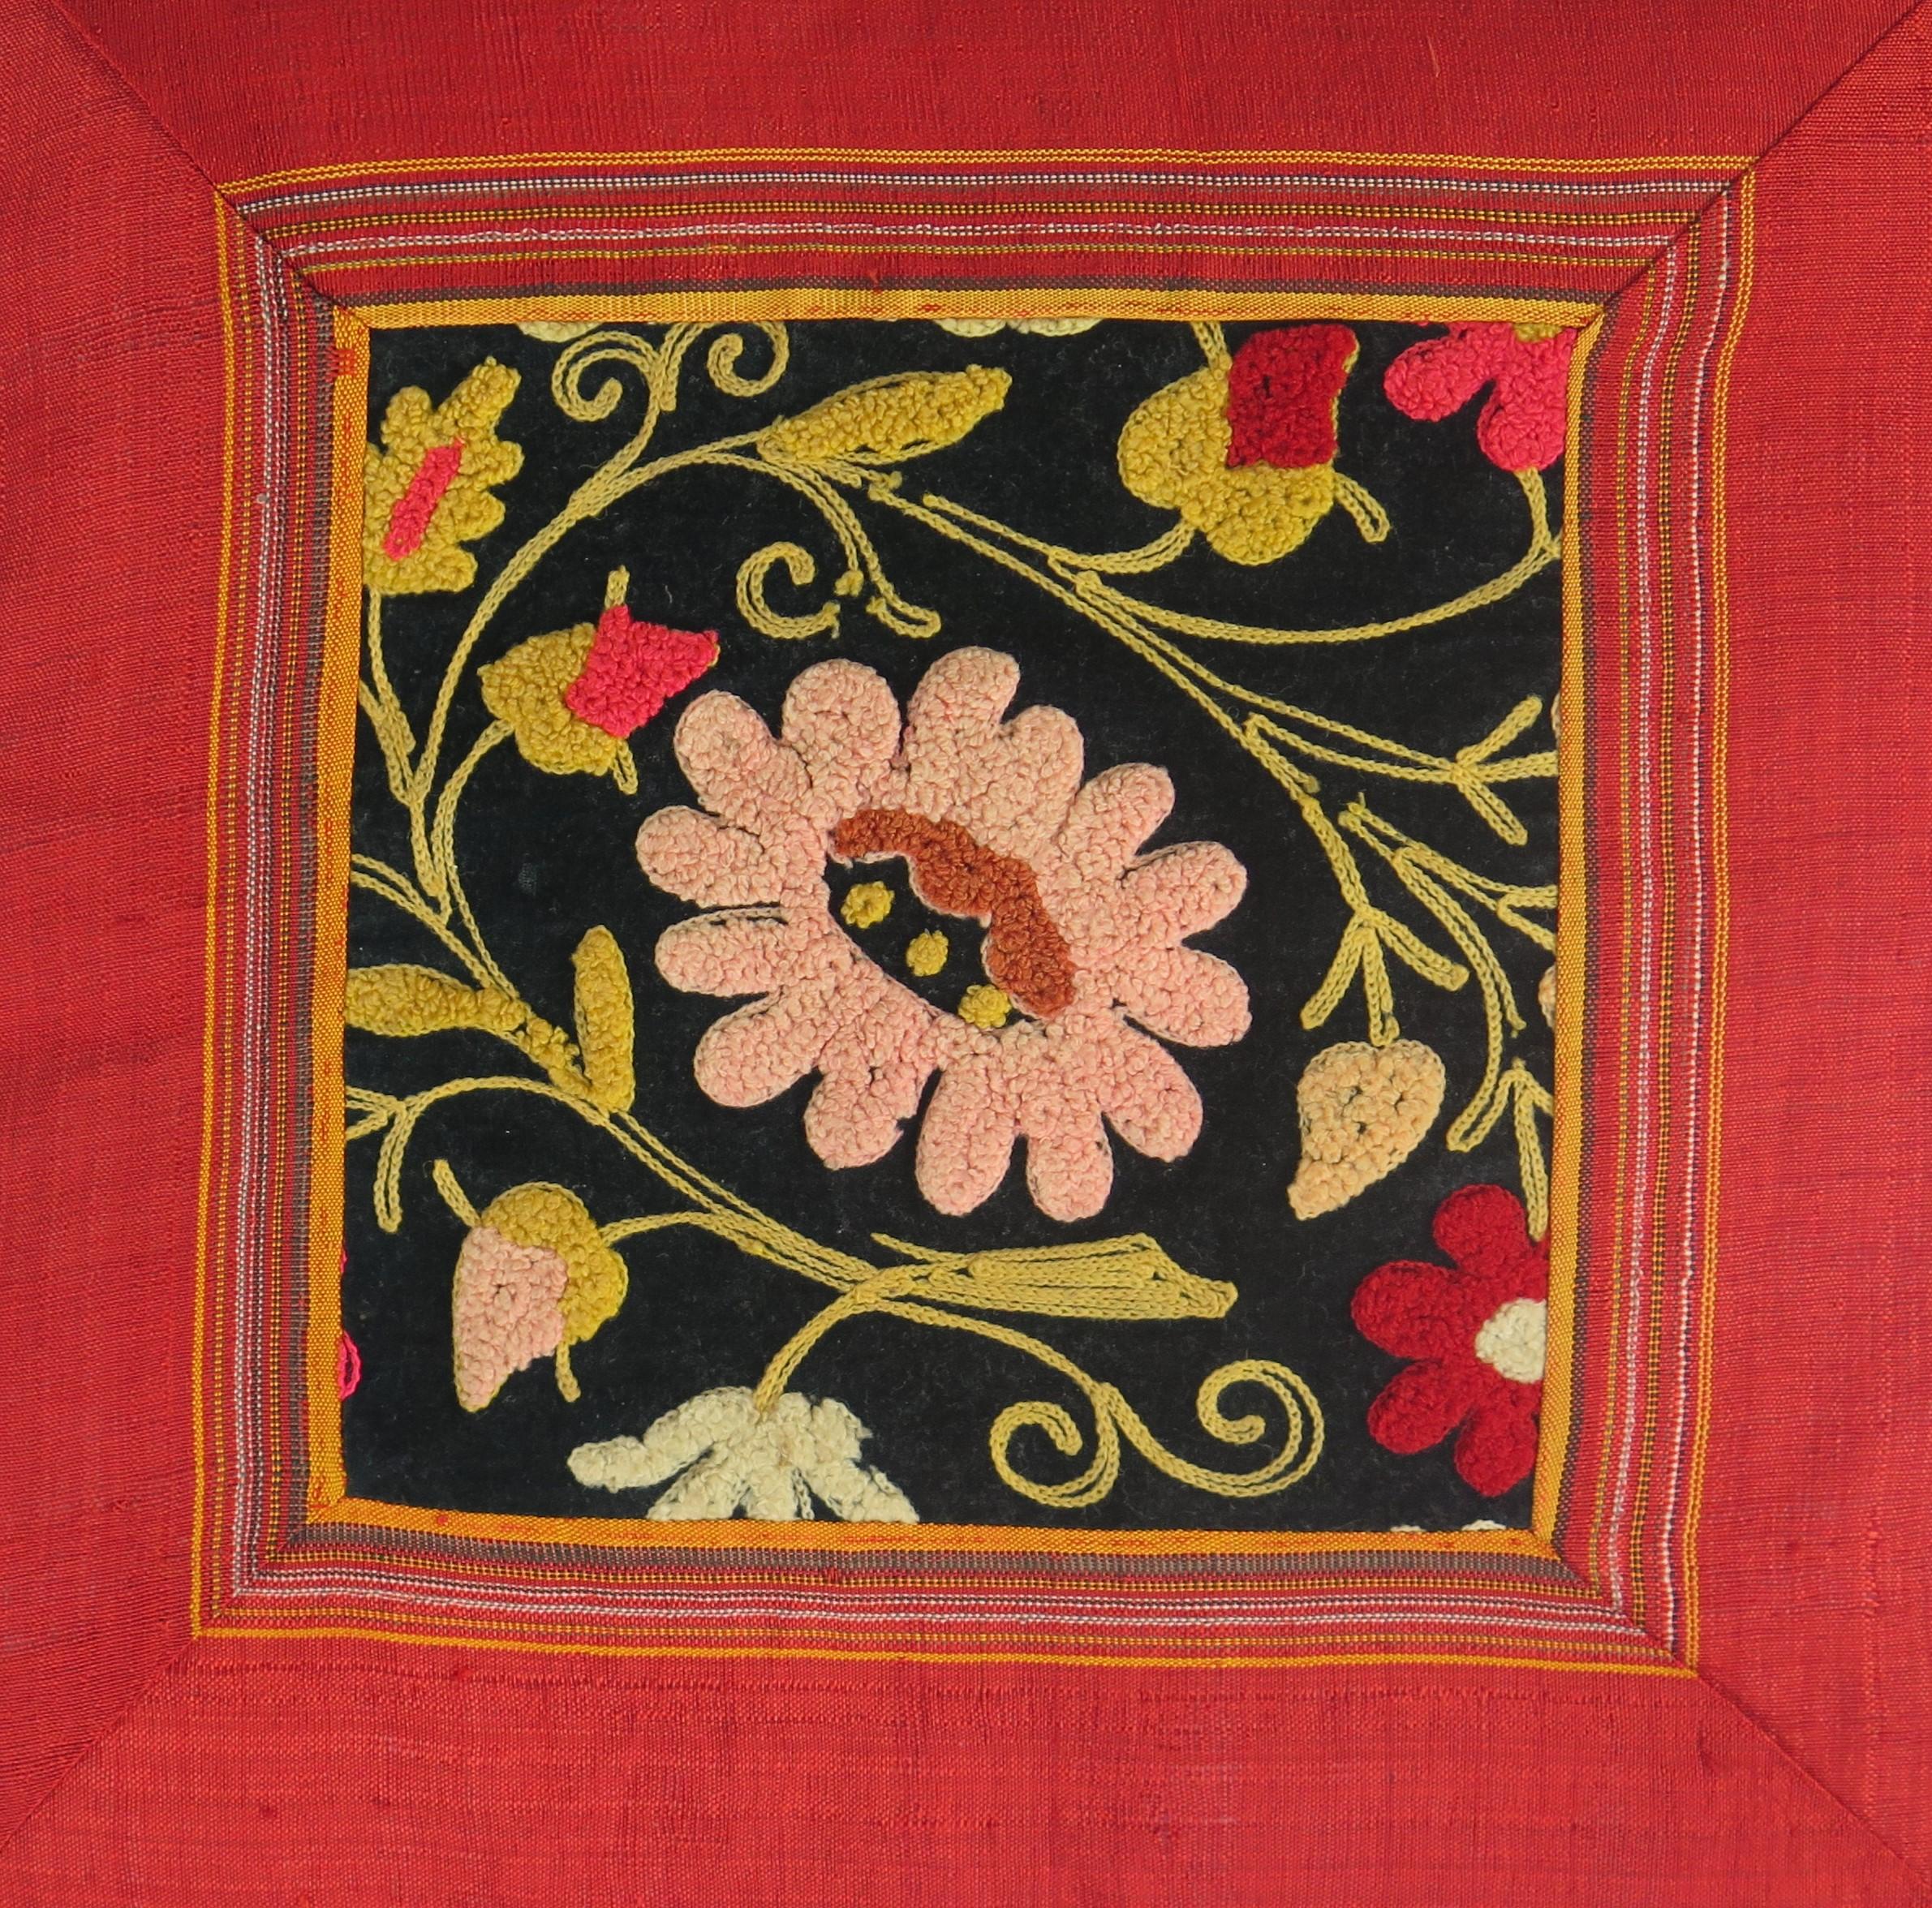 Es handelt sich um ein sehr dekoratives Kissen mit einem handgestickten, floralen Jugendstil-Panel aus Wolle mit roter Seidenbordüre, eingefasst in einen roten Stoff, den wir auf das späte 19. und frühe 20,  um 1900.

Das Kissen ist etwa 17 Zoll